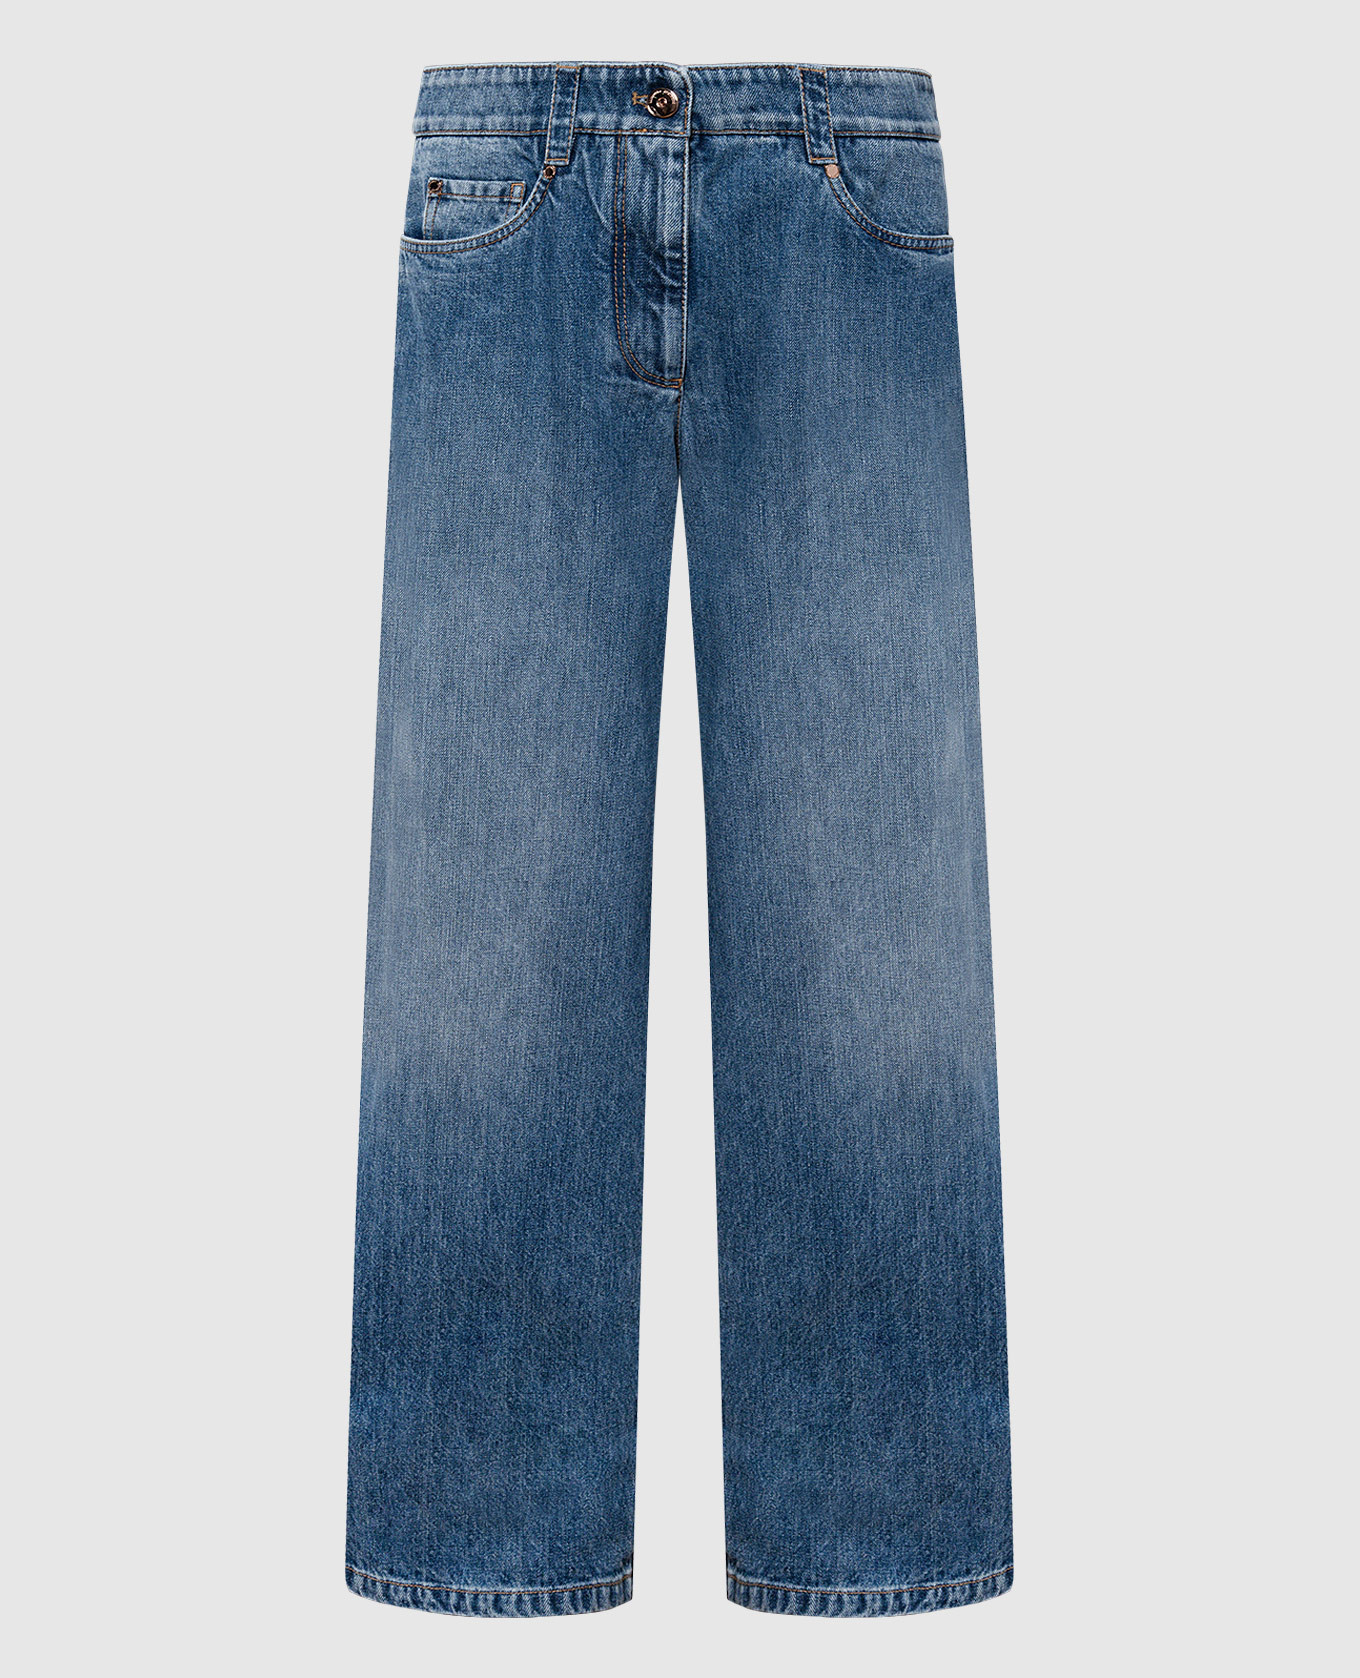 Синие джинсы с эффектом наложения слоев